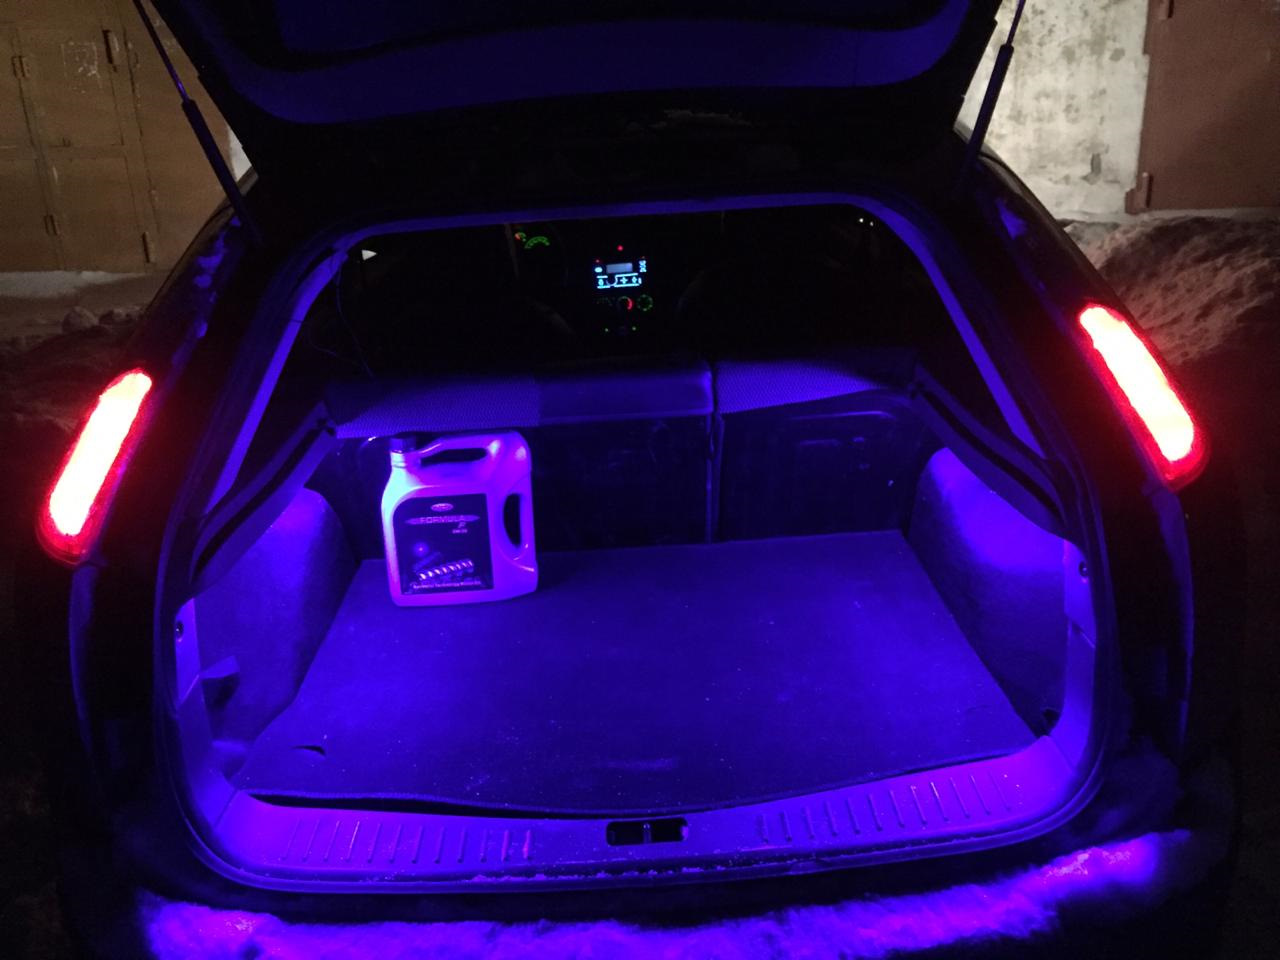 Купить подсветку багажника. Лампа подсветки багажника Форд фокус 2. Подсветка багажника Форд фокус 2 хэтчбек. Подсветка багажника Ford Focus 2. Лампочка в багажнике Форд фокус 2 хэтчбек.